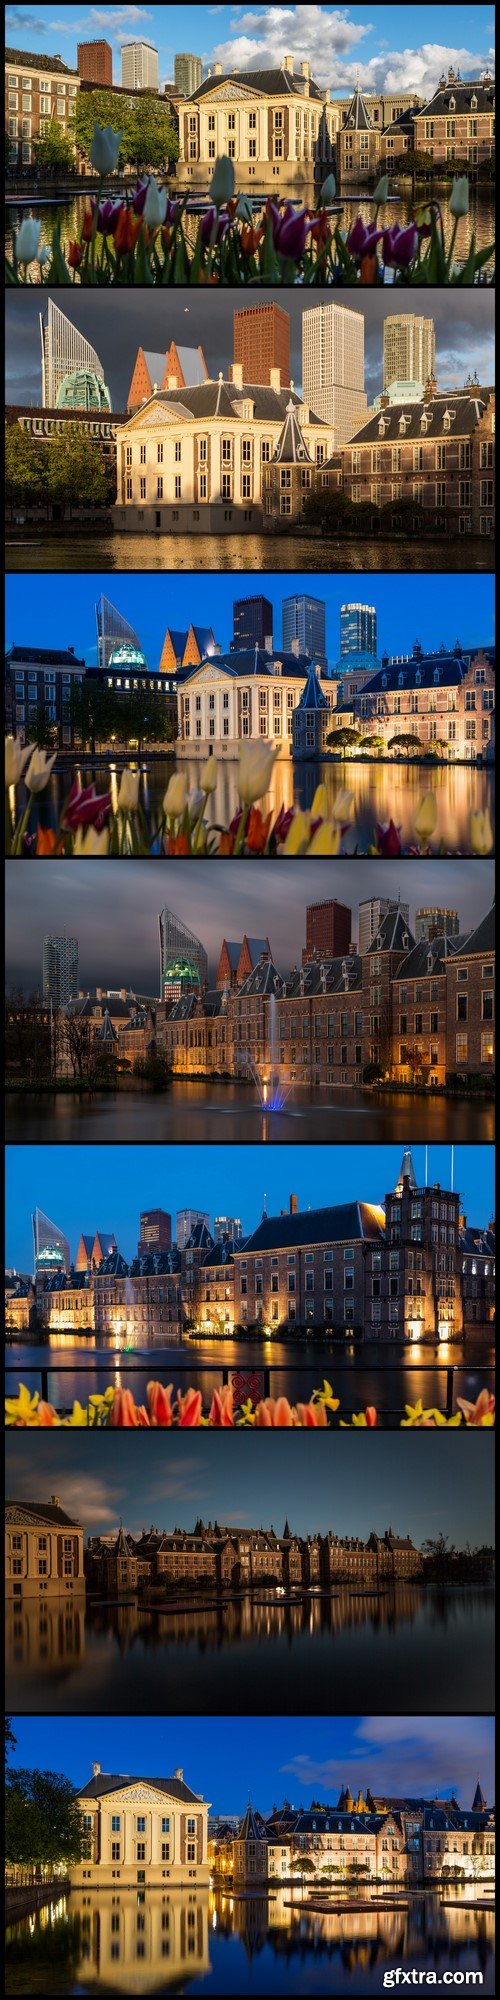 Binnenhof Castle in The Hague 7X JPEG